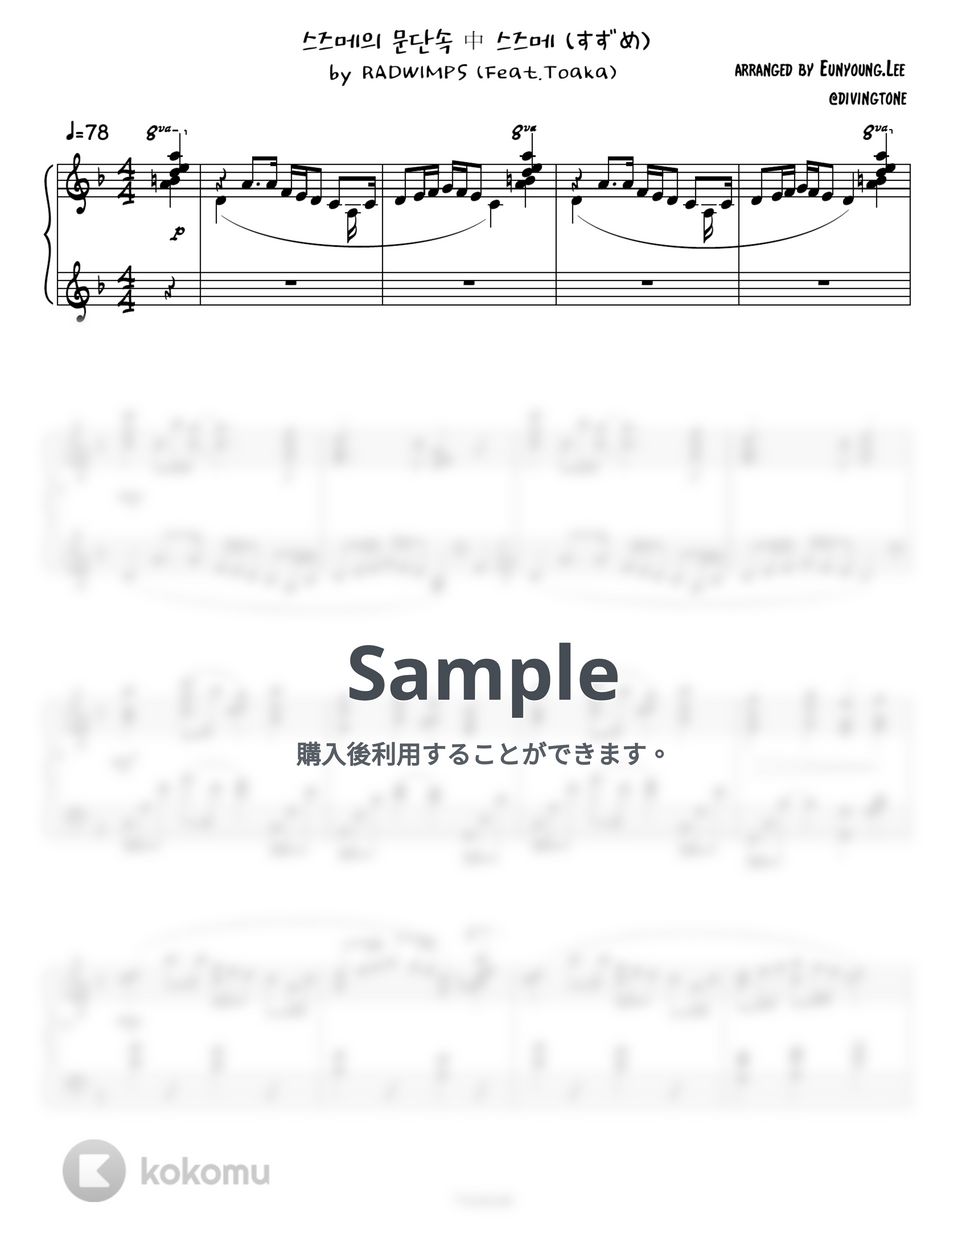 RADWIMPS (Feat.Toaka) - すずめ (Piano Sheet) by Divingtone